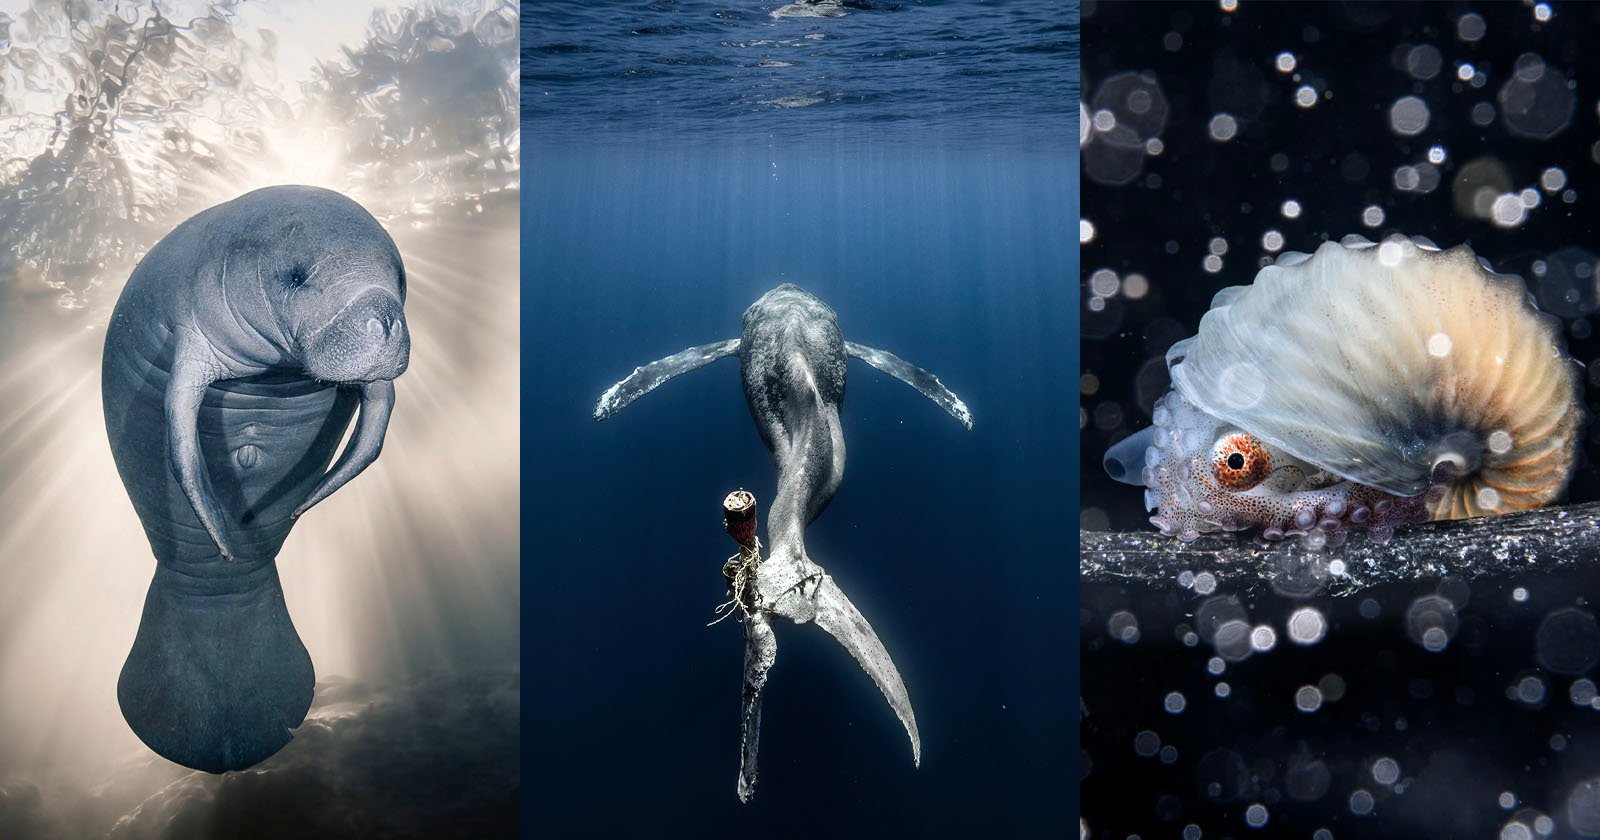  epic marine photos star ocean photographer year 